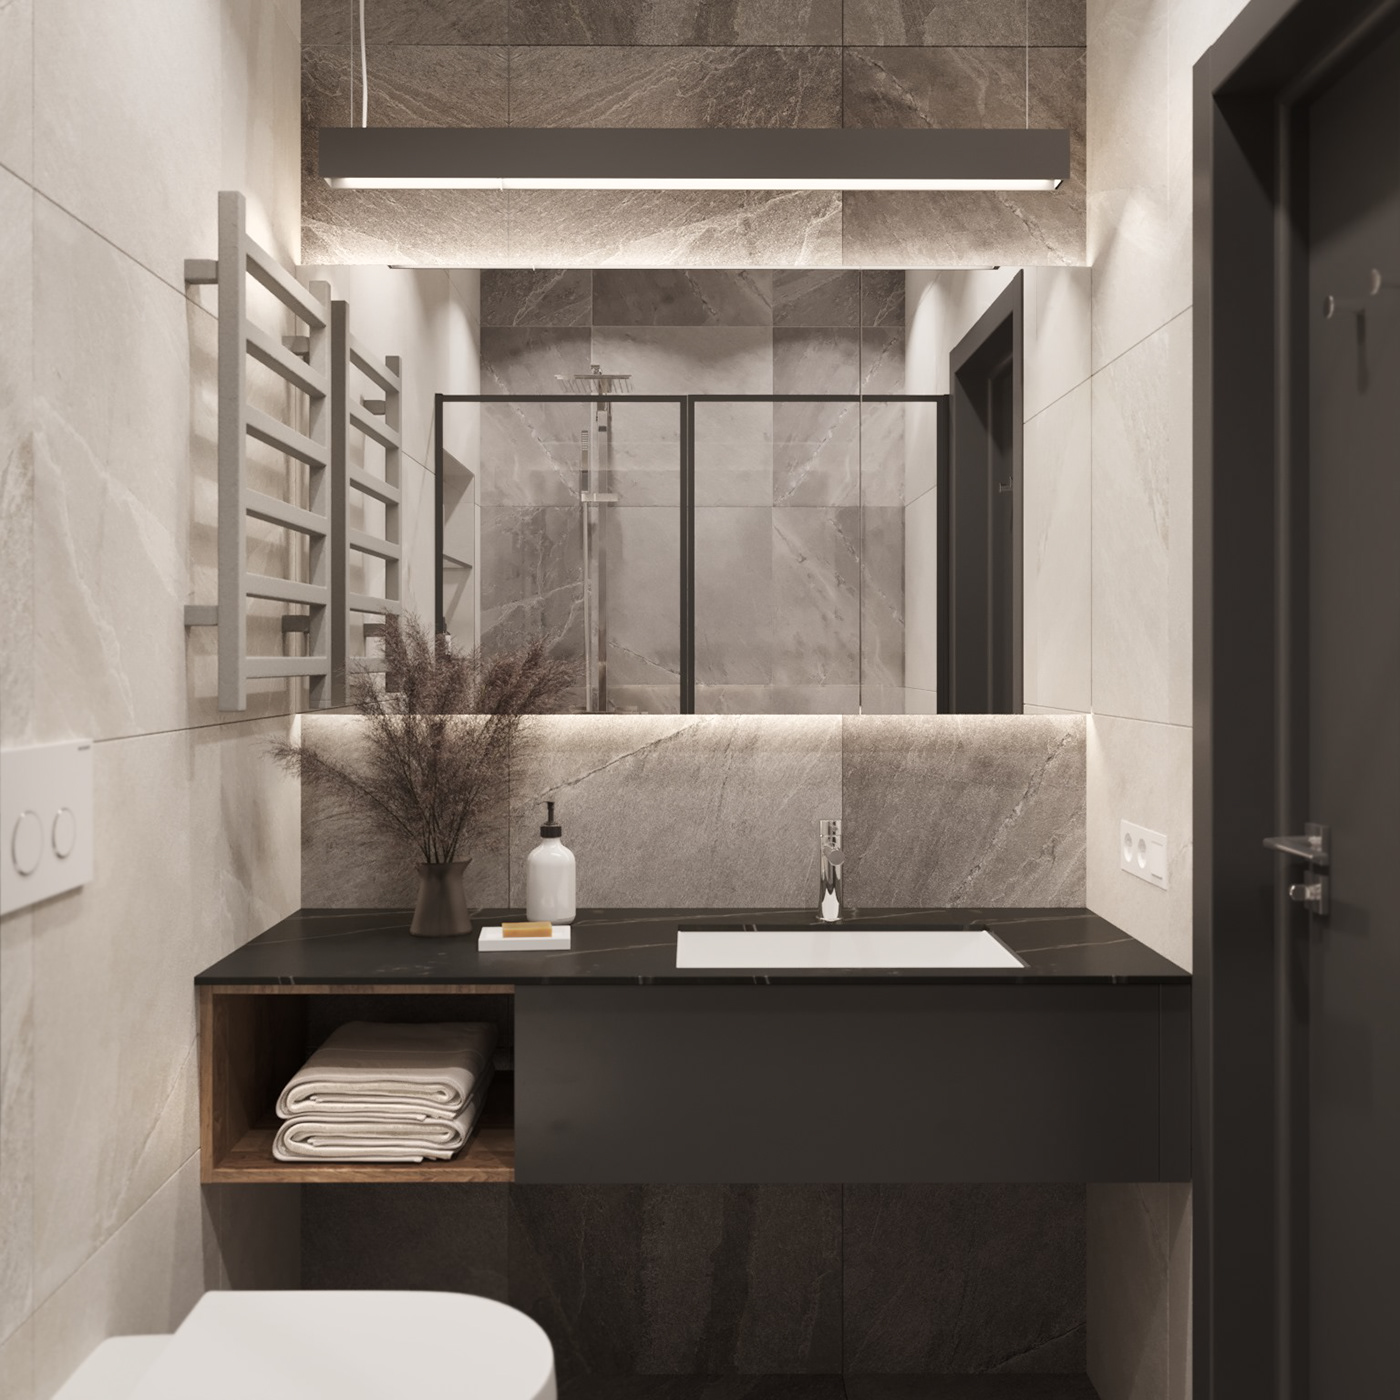 3ds max architecture corona design home design Interior interior design  modern Render visualization